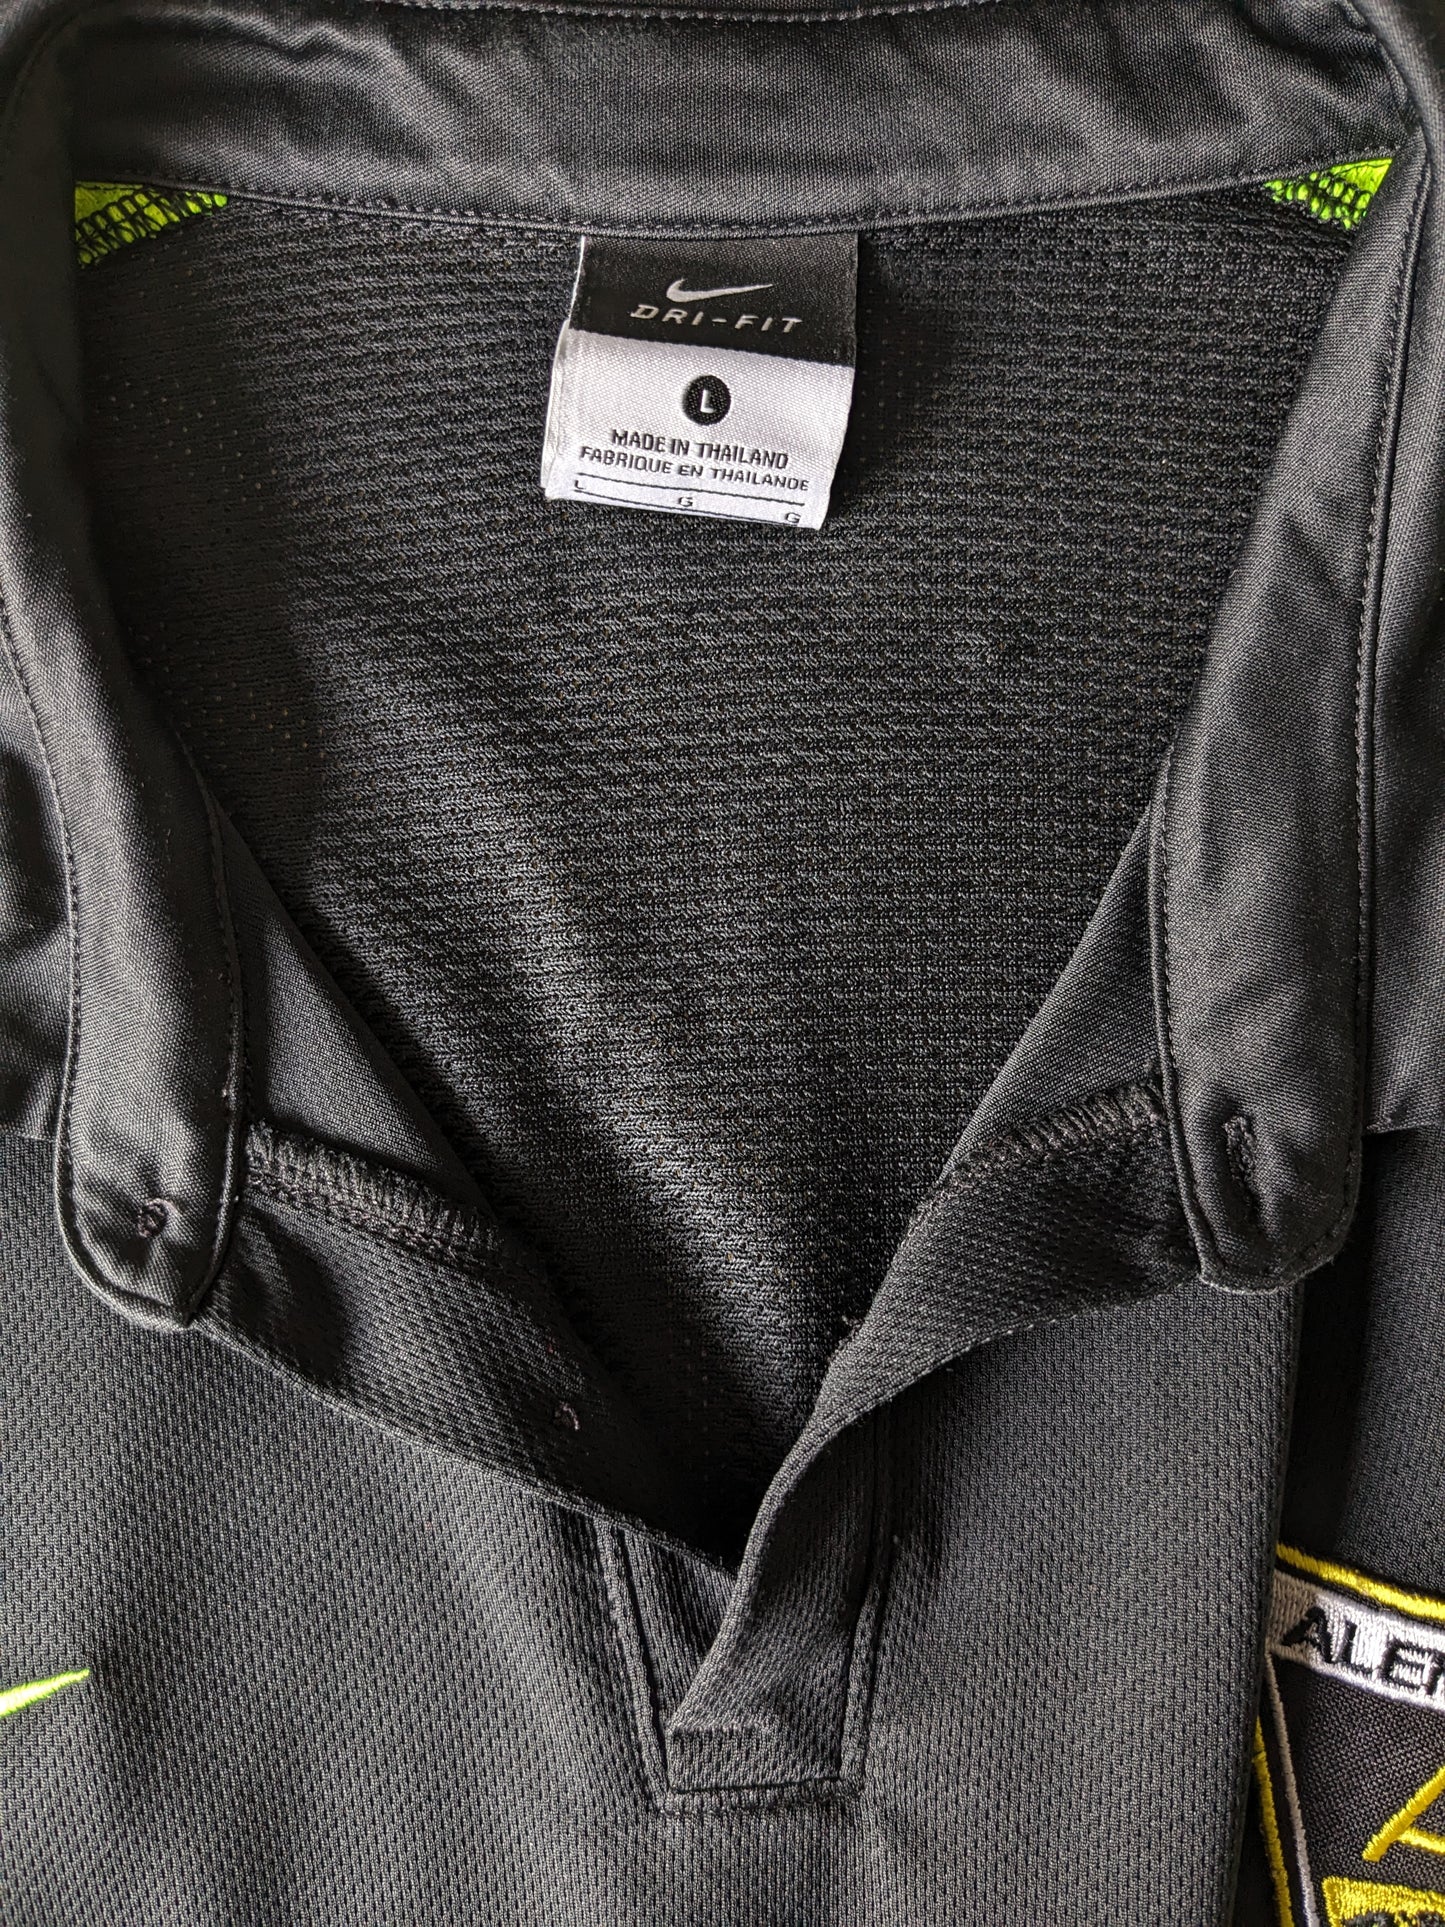 Nike Alemannia Sport Polo. Color verde negro. Talla L.